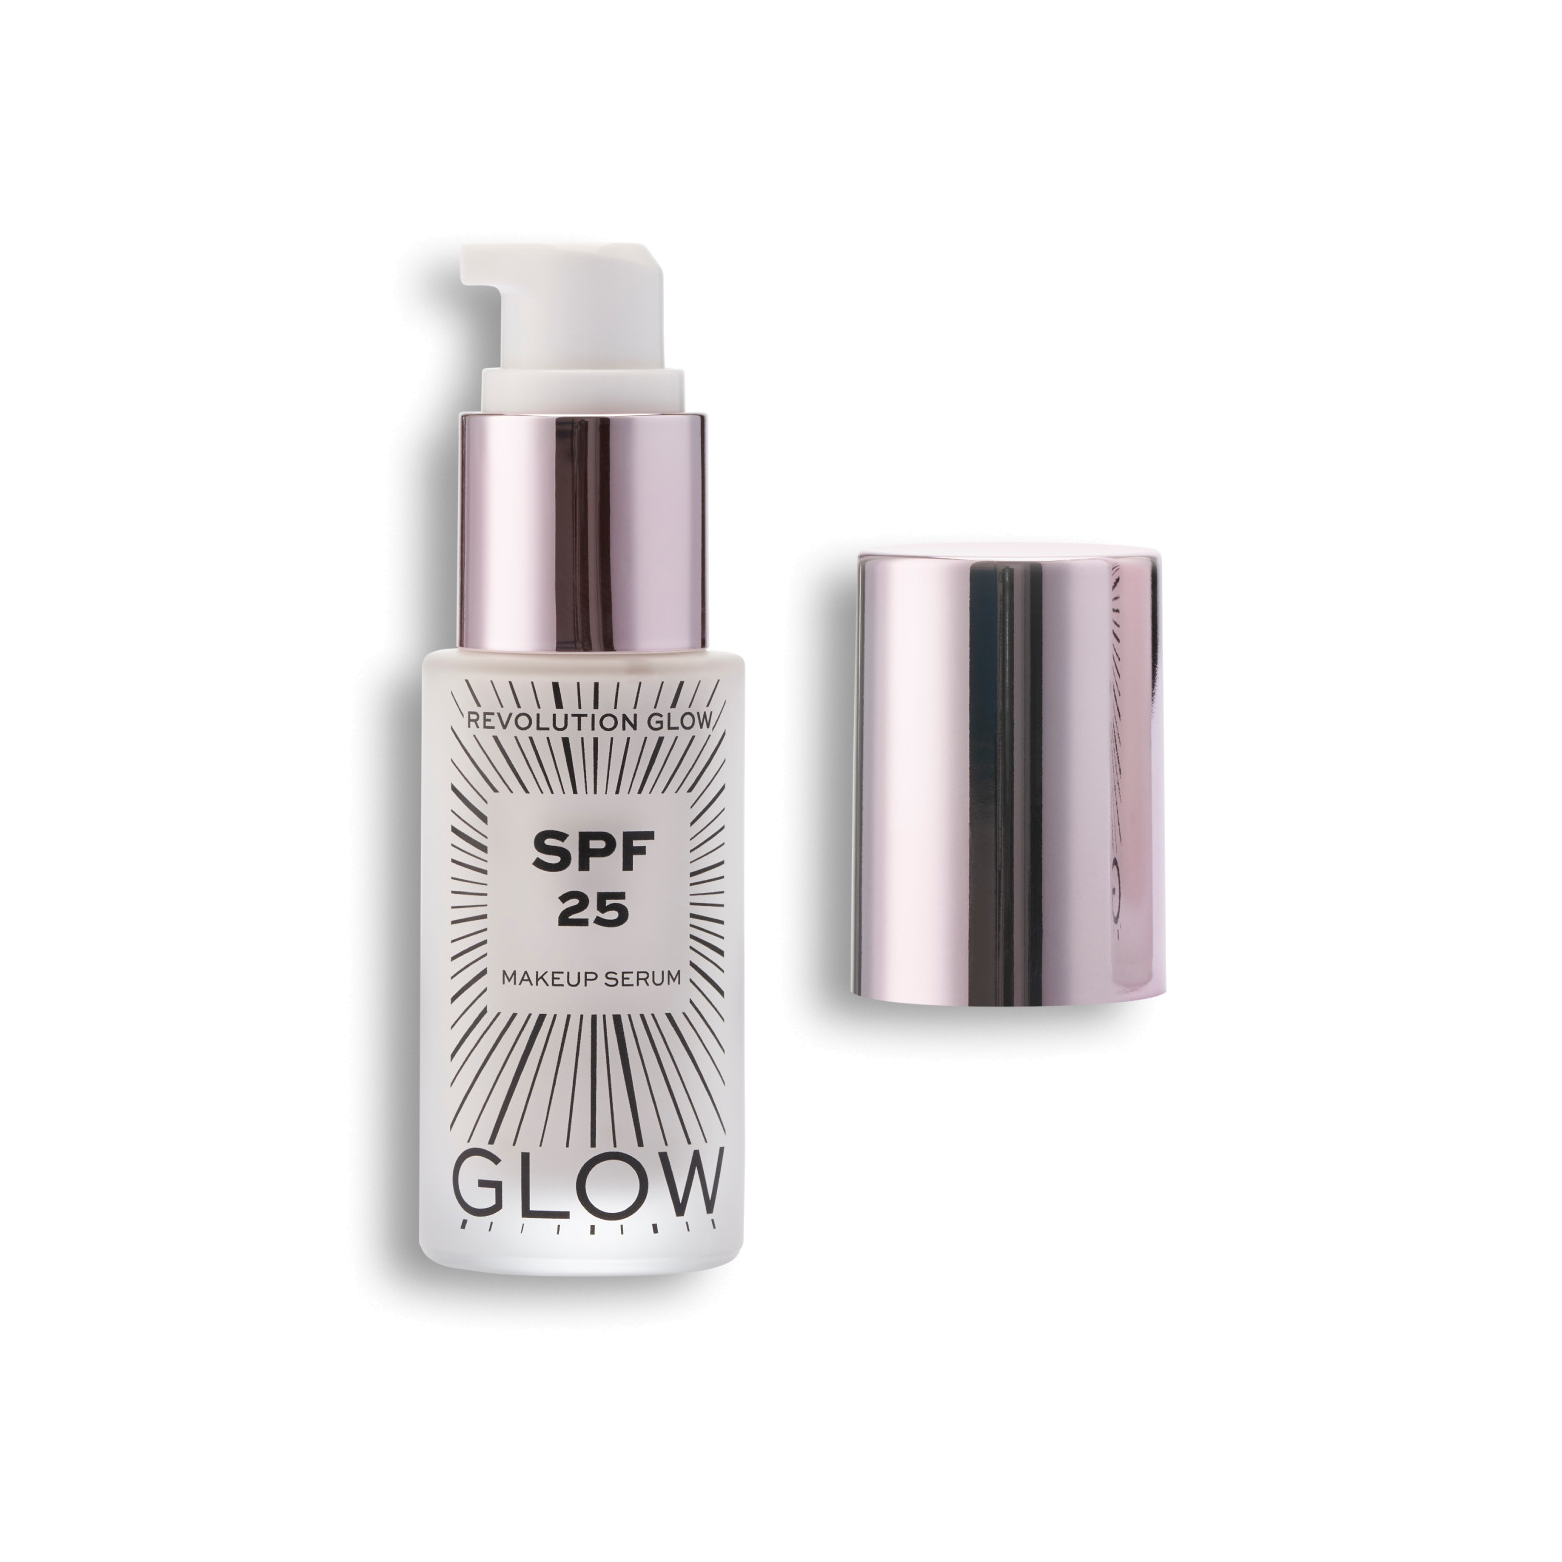 Сыворотка-праймер для лица Glow Make Up Serum SPF25  купить в VISAGEHALL